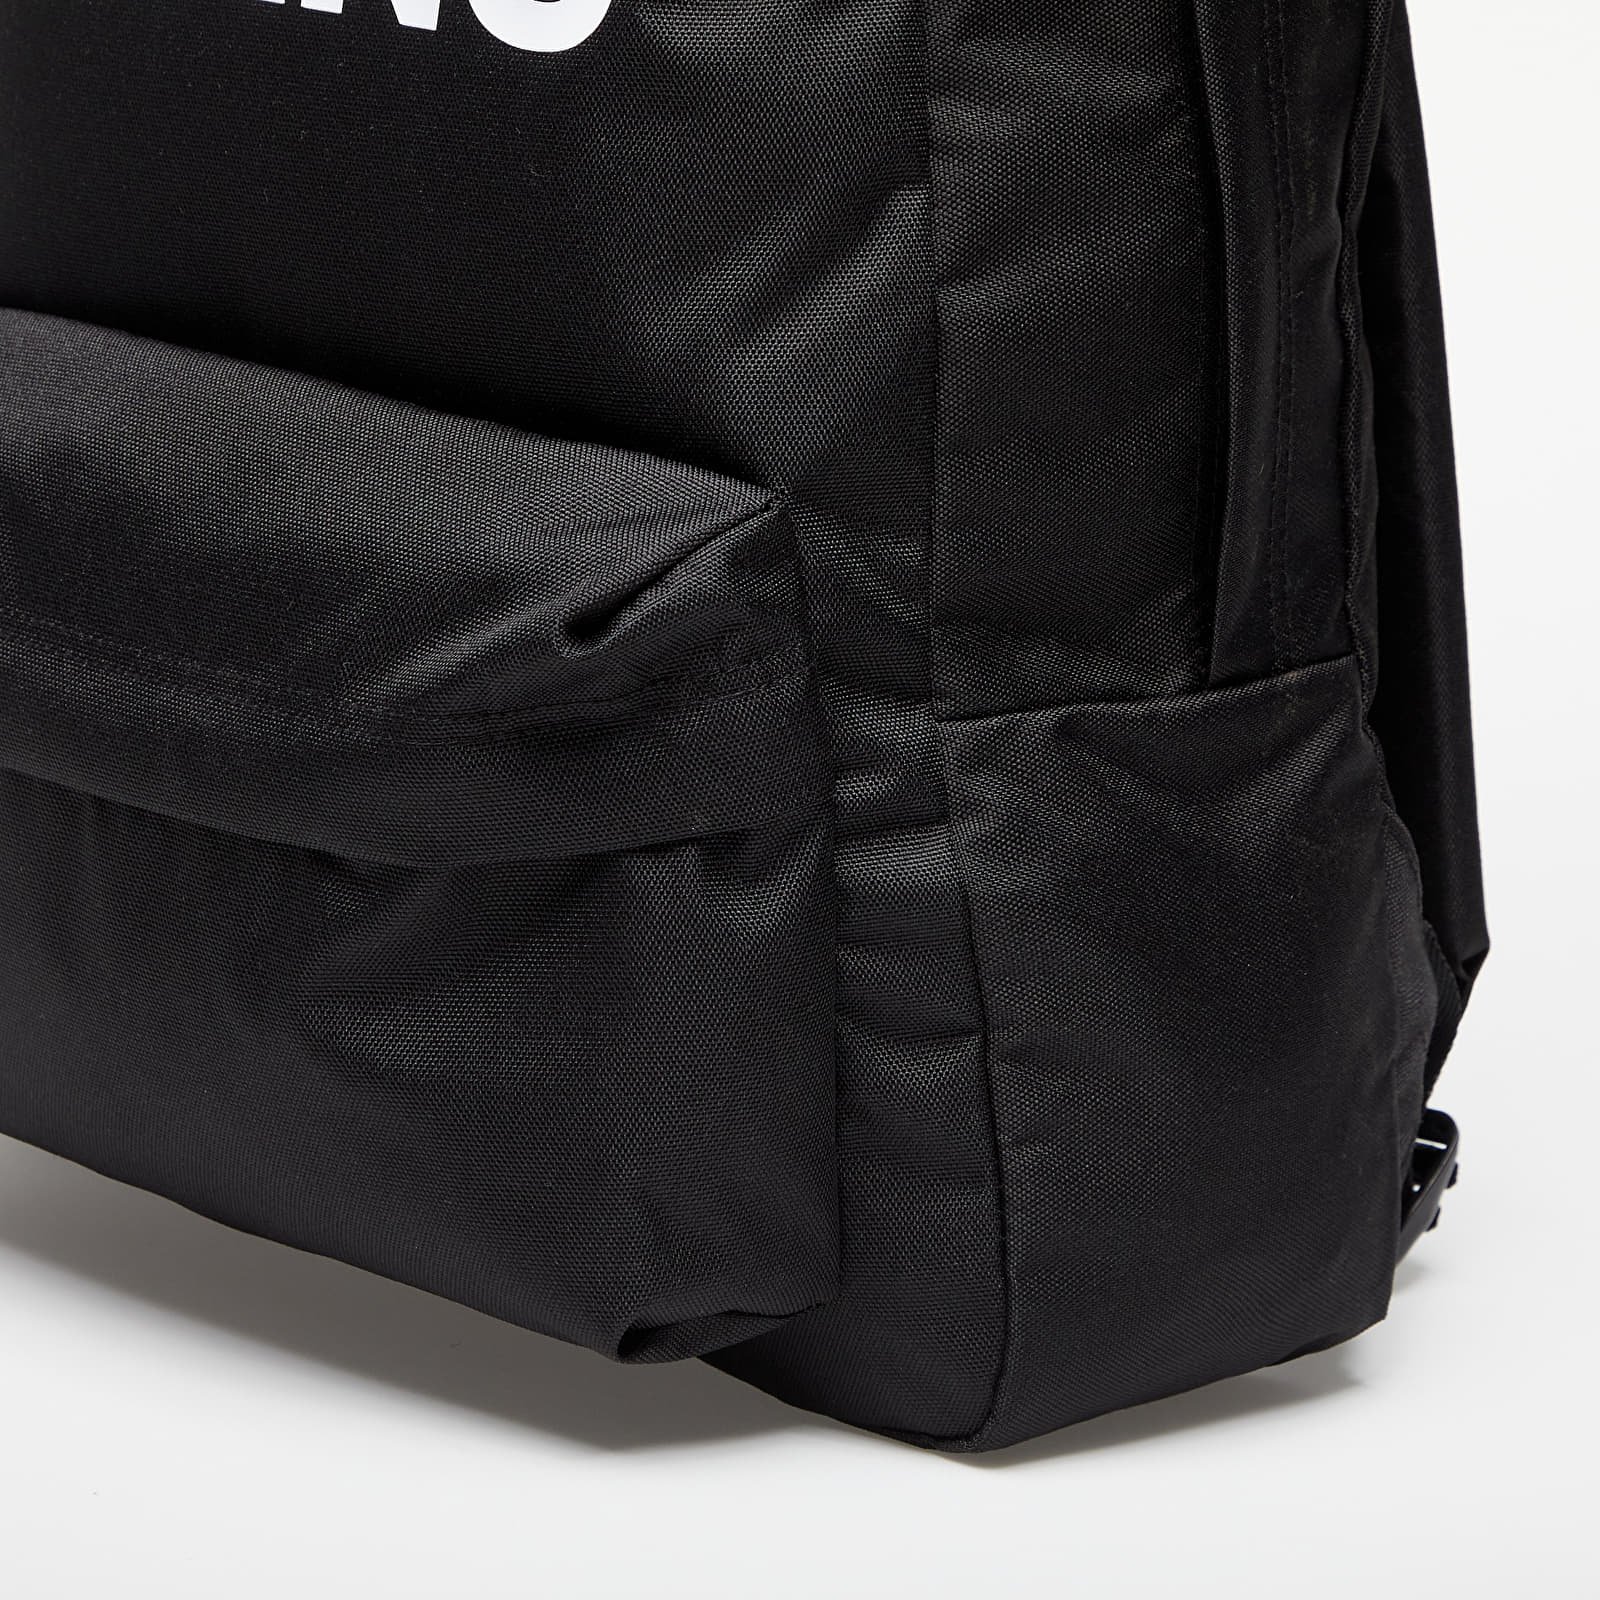 Backpack Old Skool Print Backpack Black, Universal